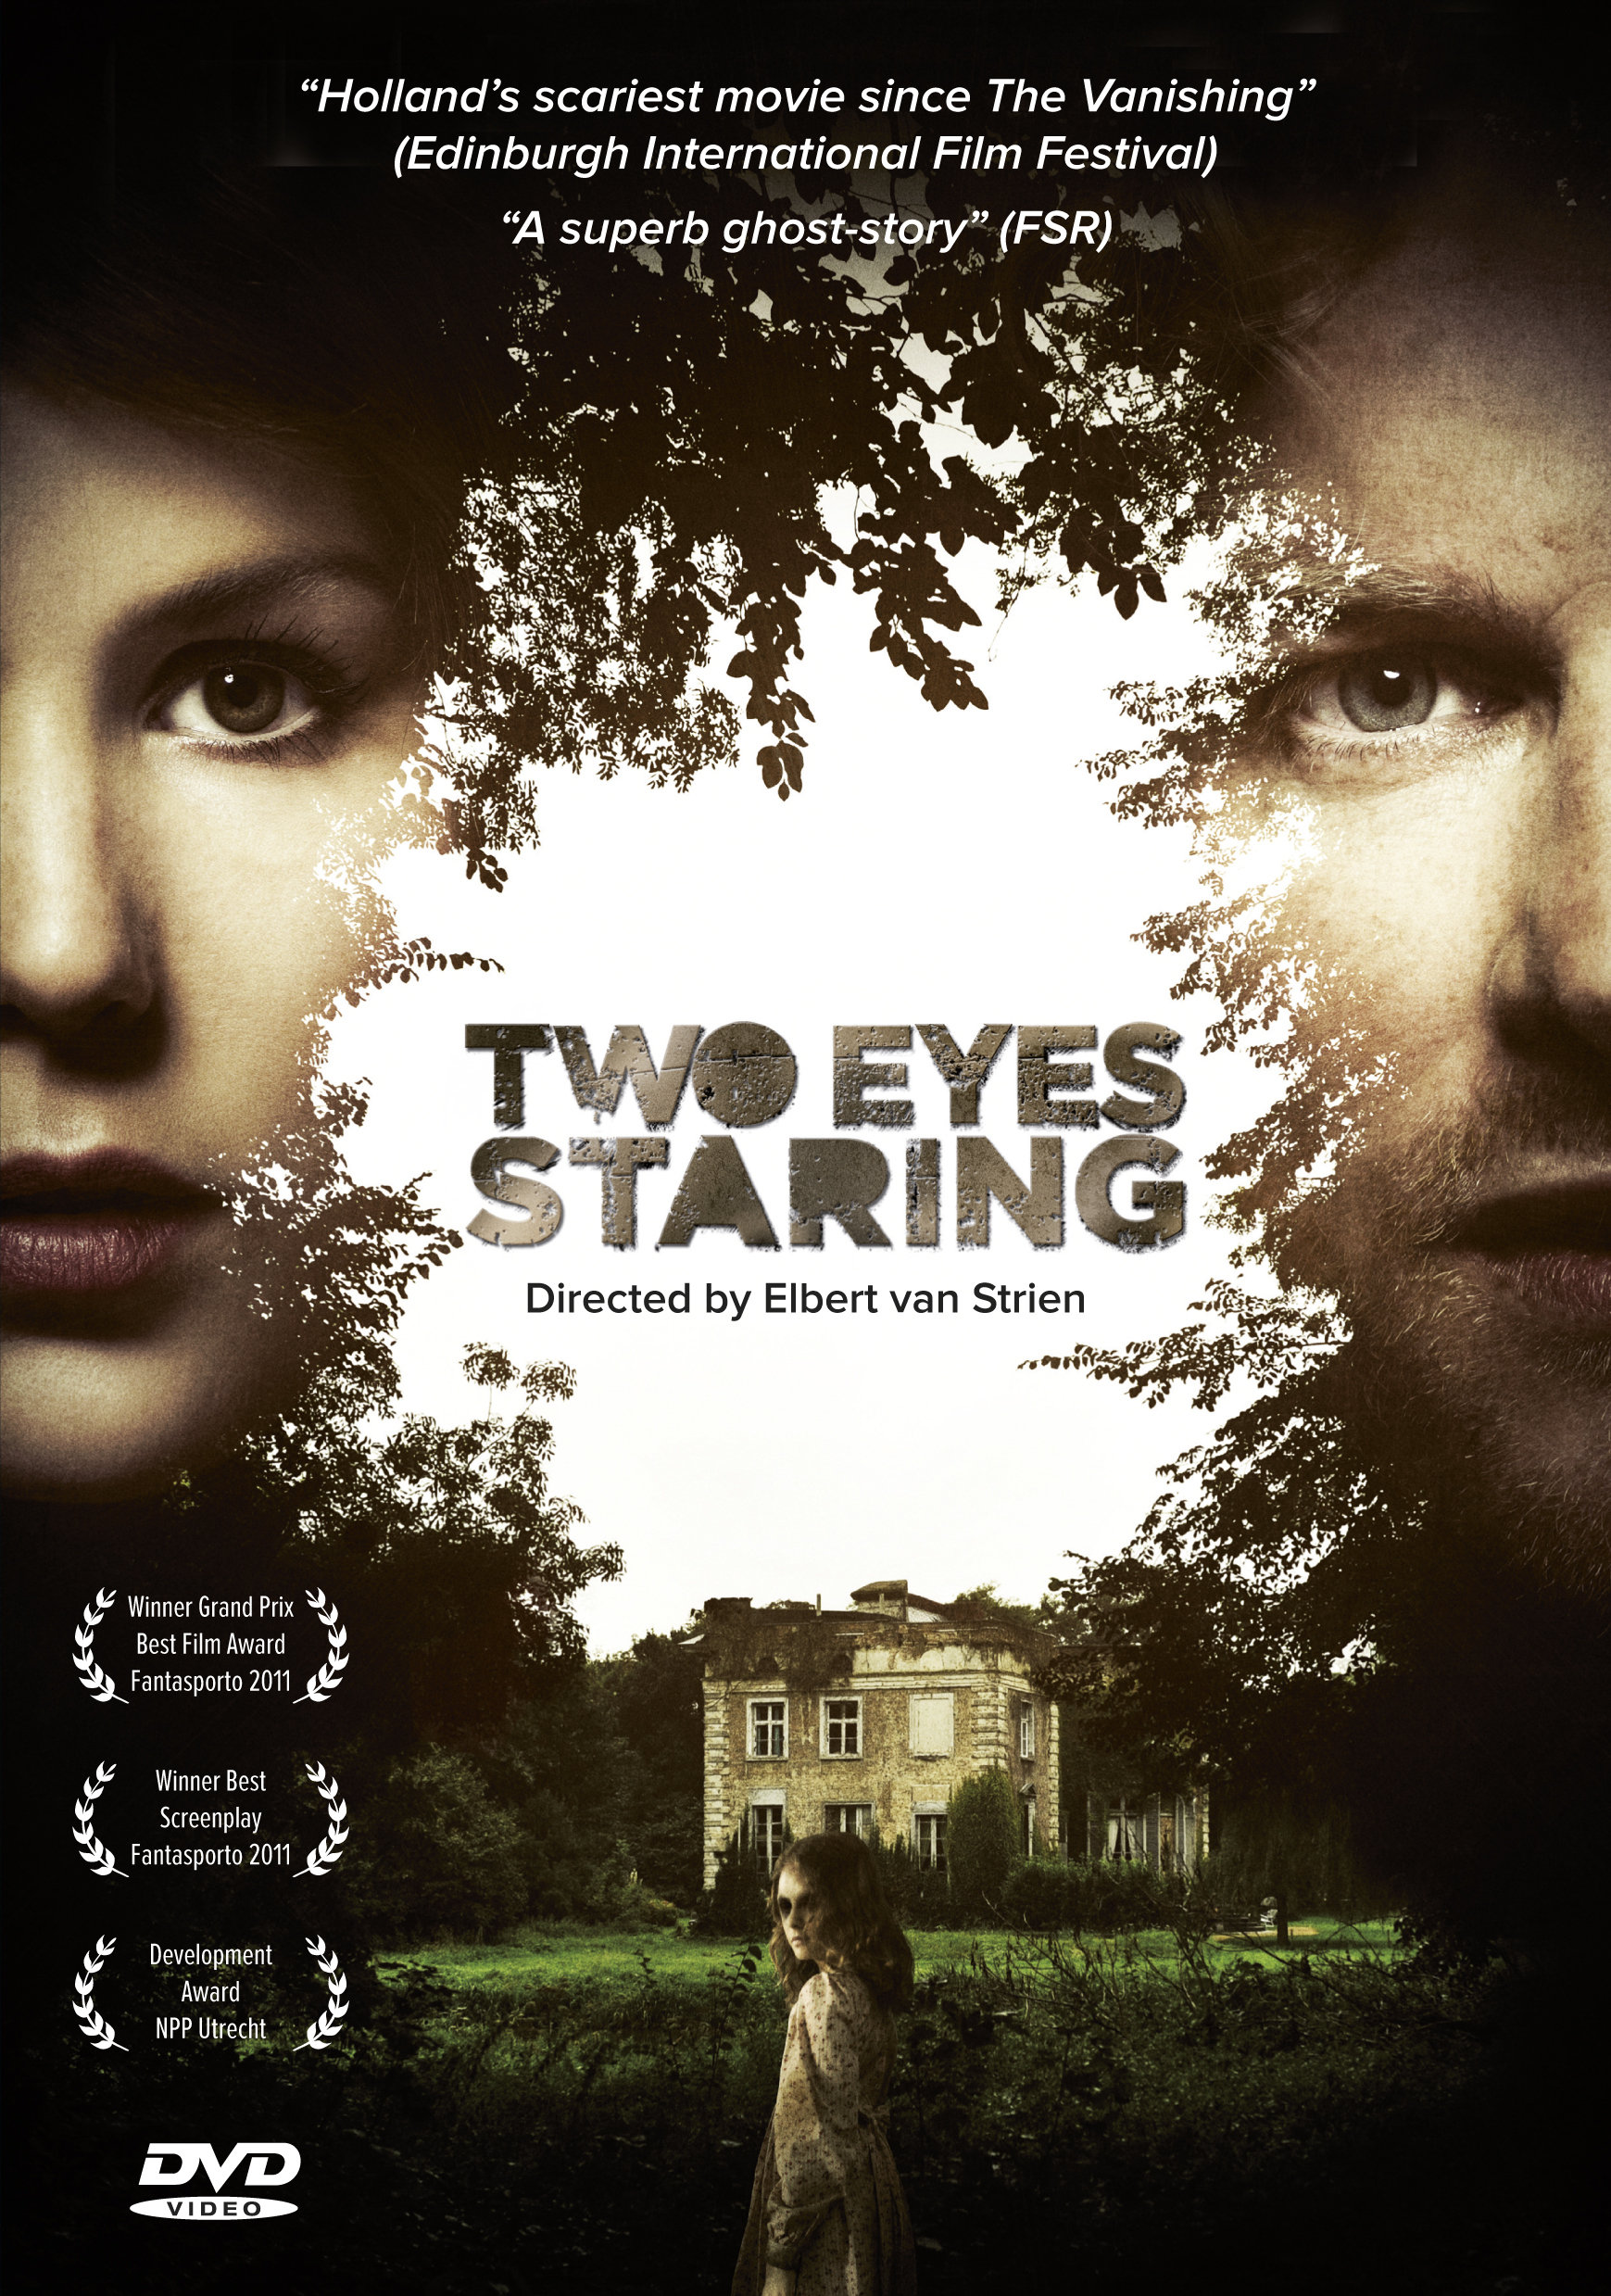 Two Eyes Staring (2010) Screenshot 2 